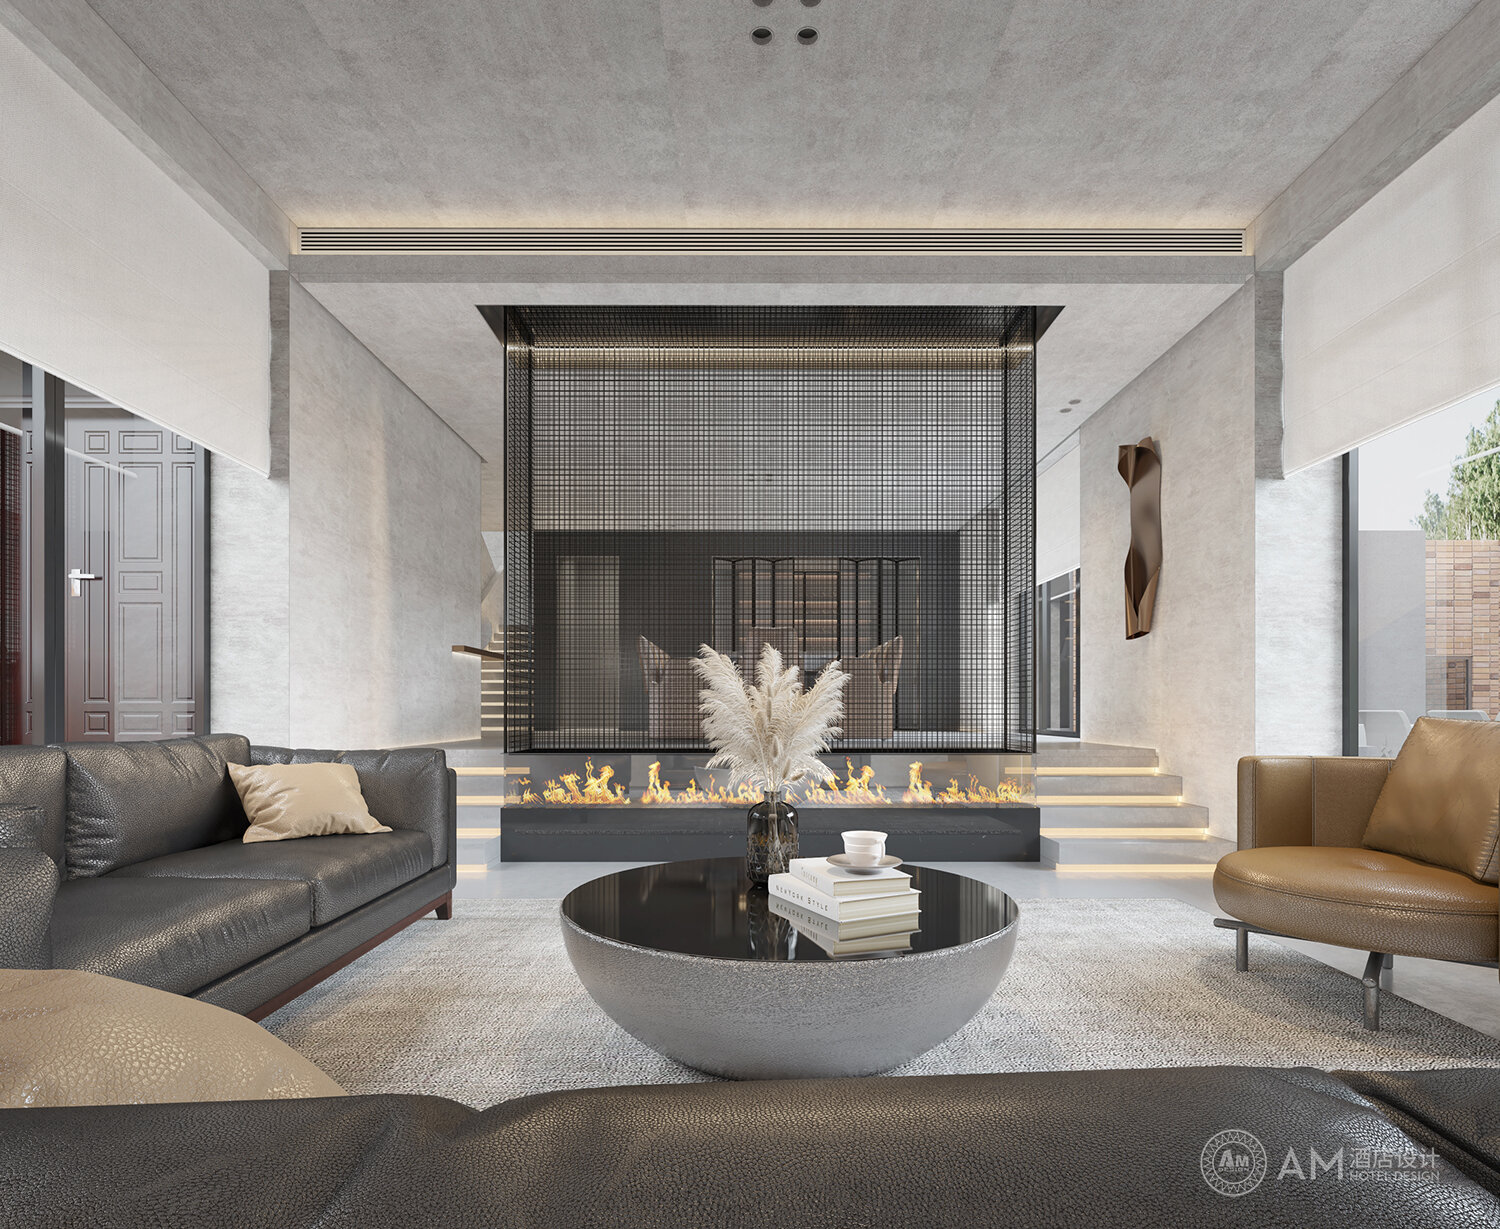 AM DESIGN | Living room design of qianjianyuan residential building in Jixian, Tianjin